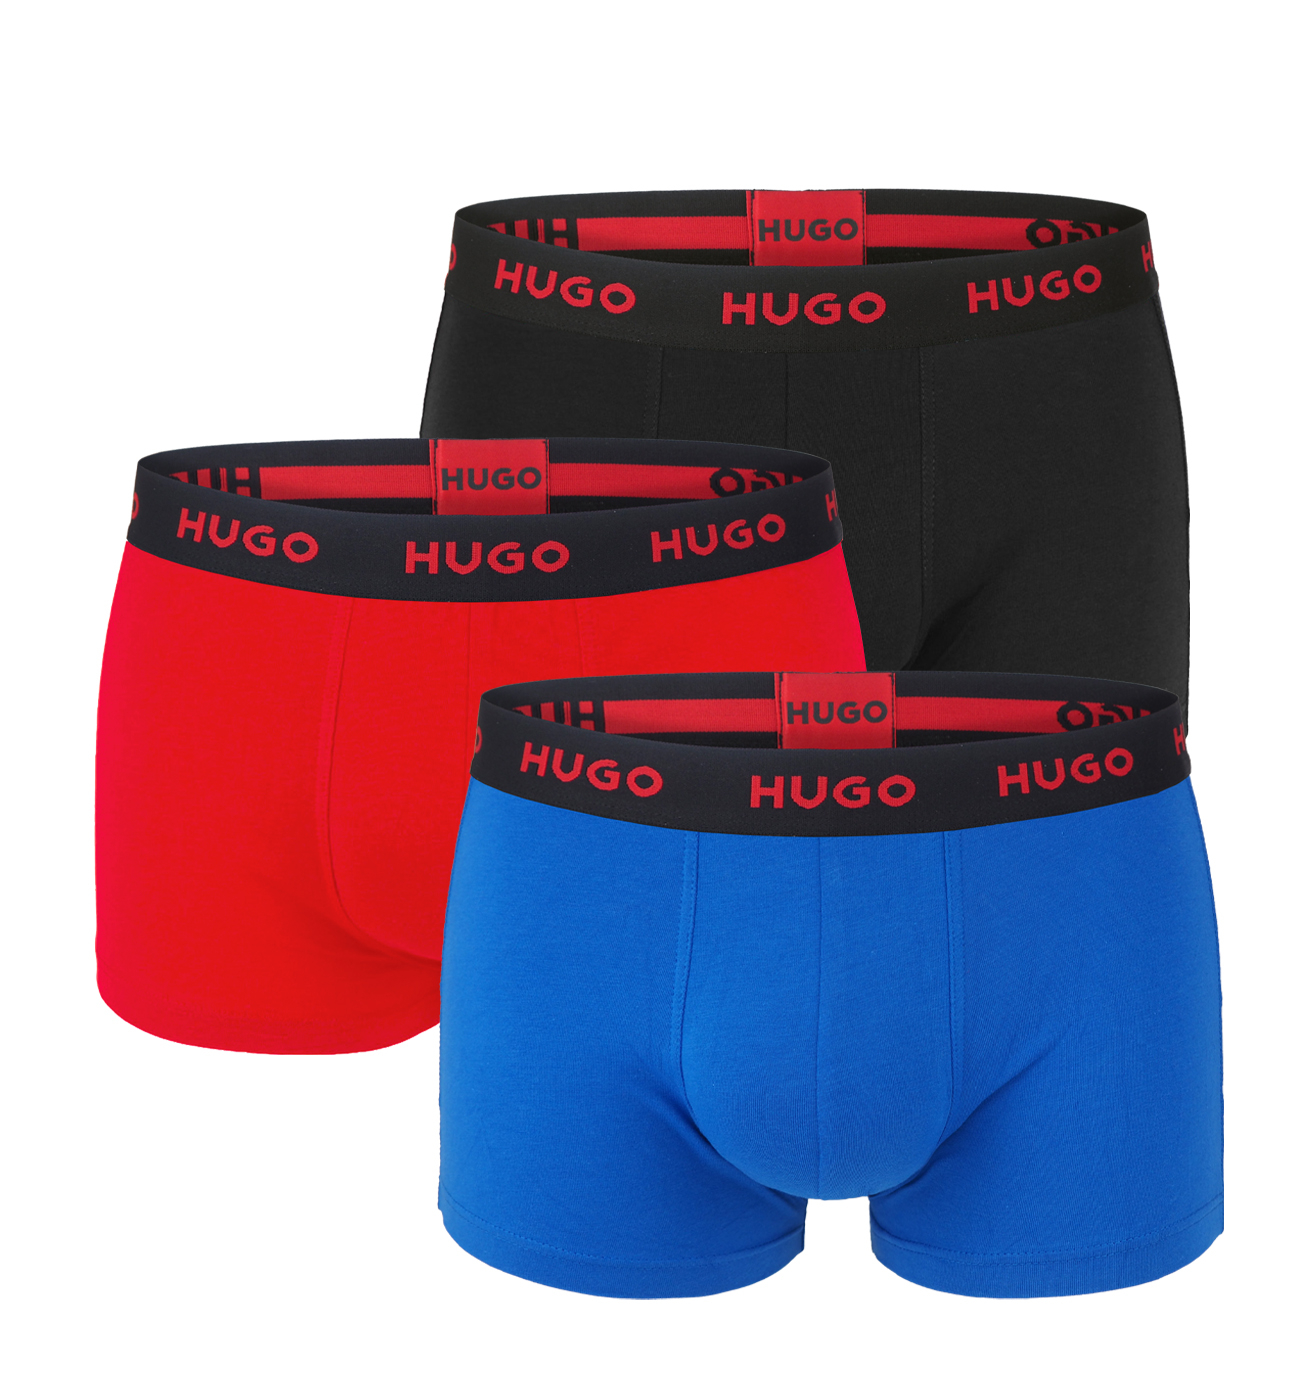 E-shop HUGO - boxerky 3PACK cotton stretch dark color & red combo - limitovaná fashion edícia (HUGO BOSS)-XXL (108-117 cm)